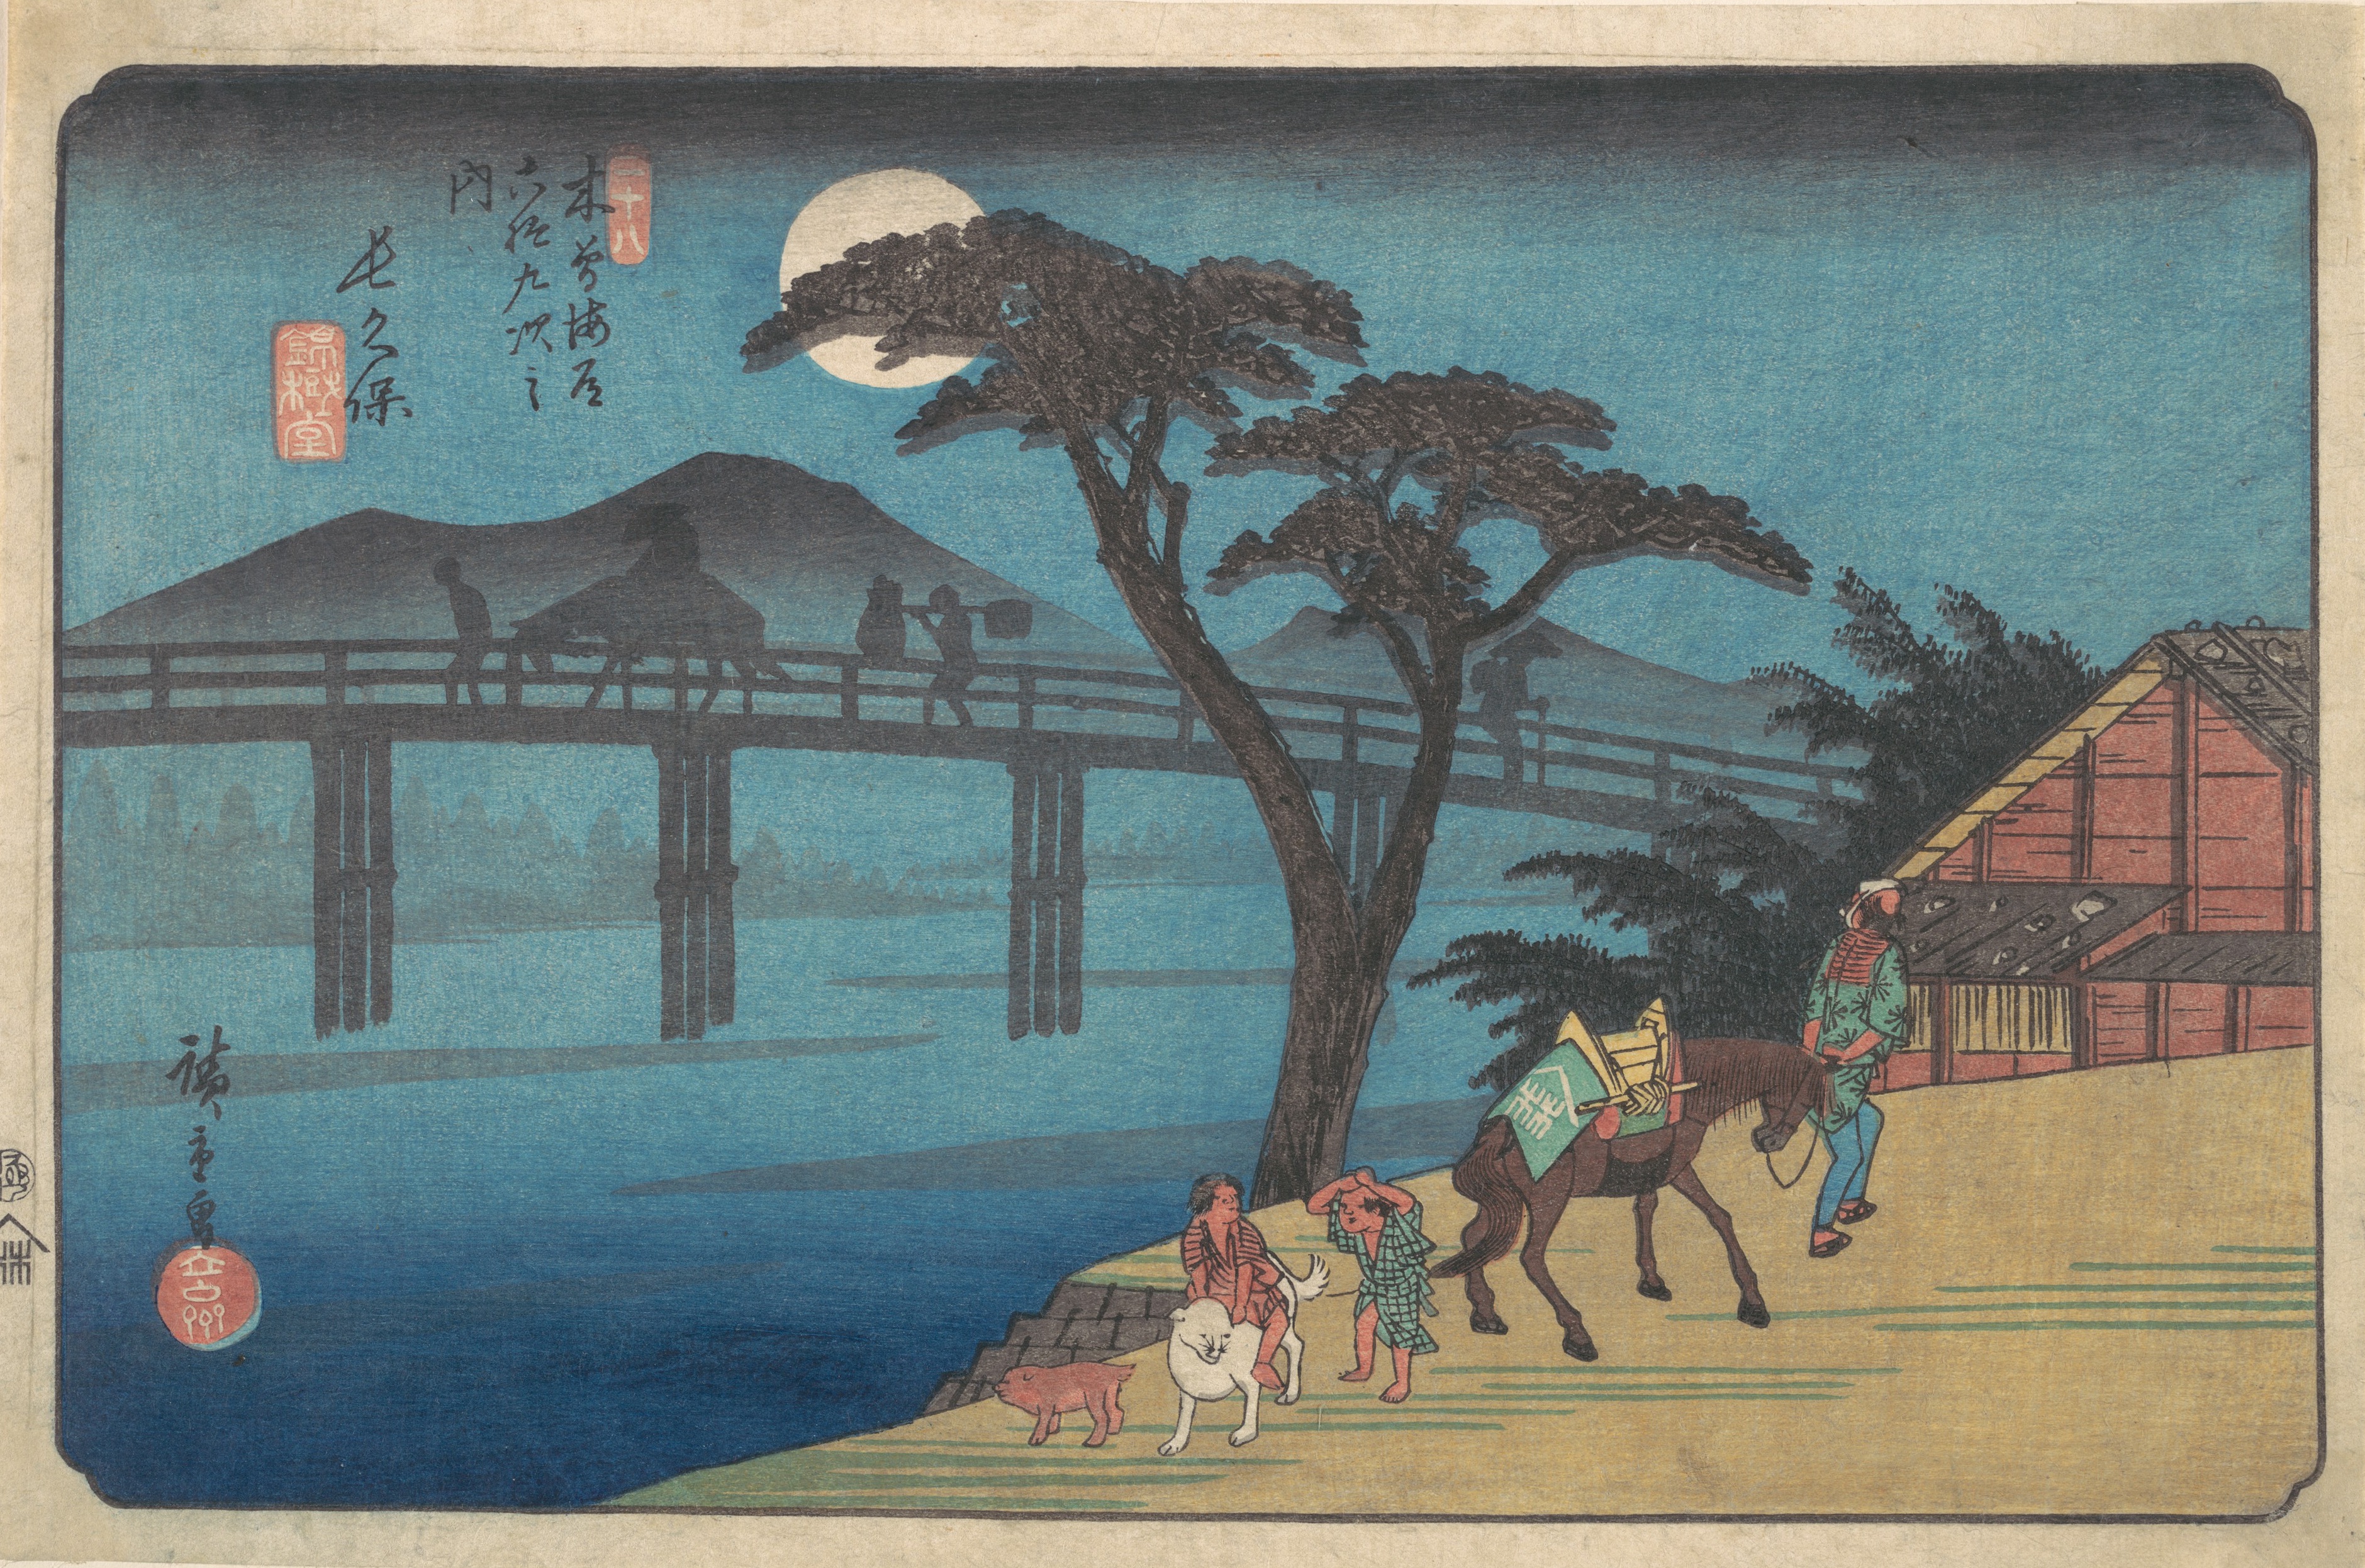 《長久保站》 by  Hiroshige - ca. 1836 - 22.2 x 34.9 cm 